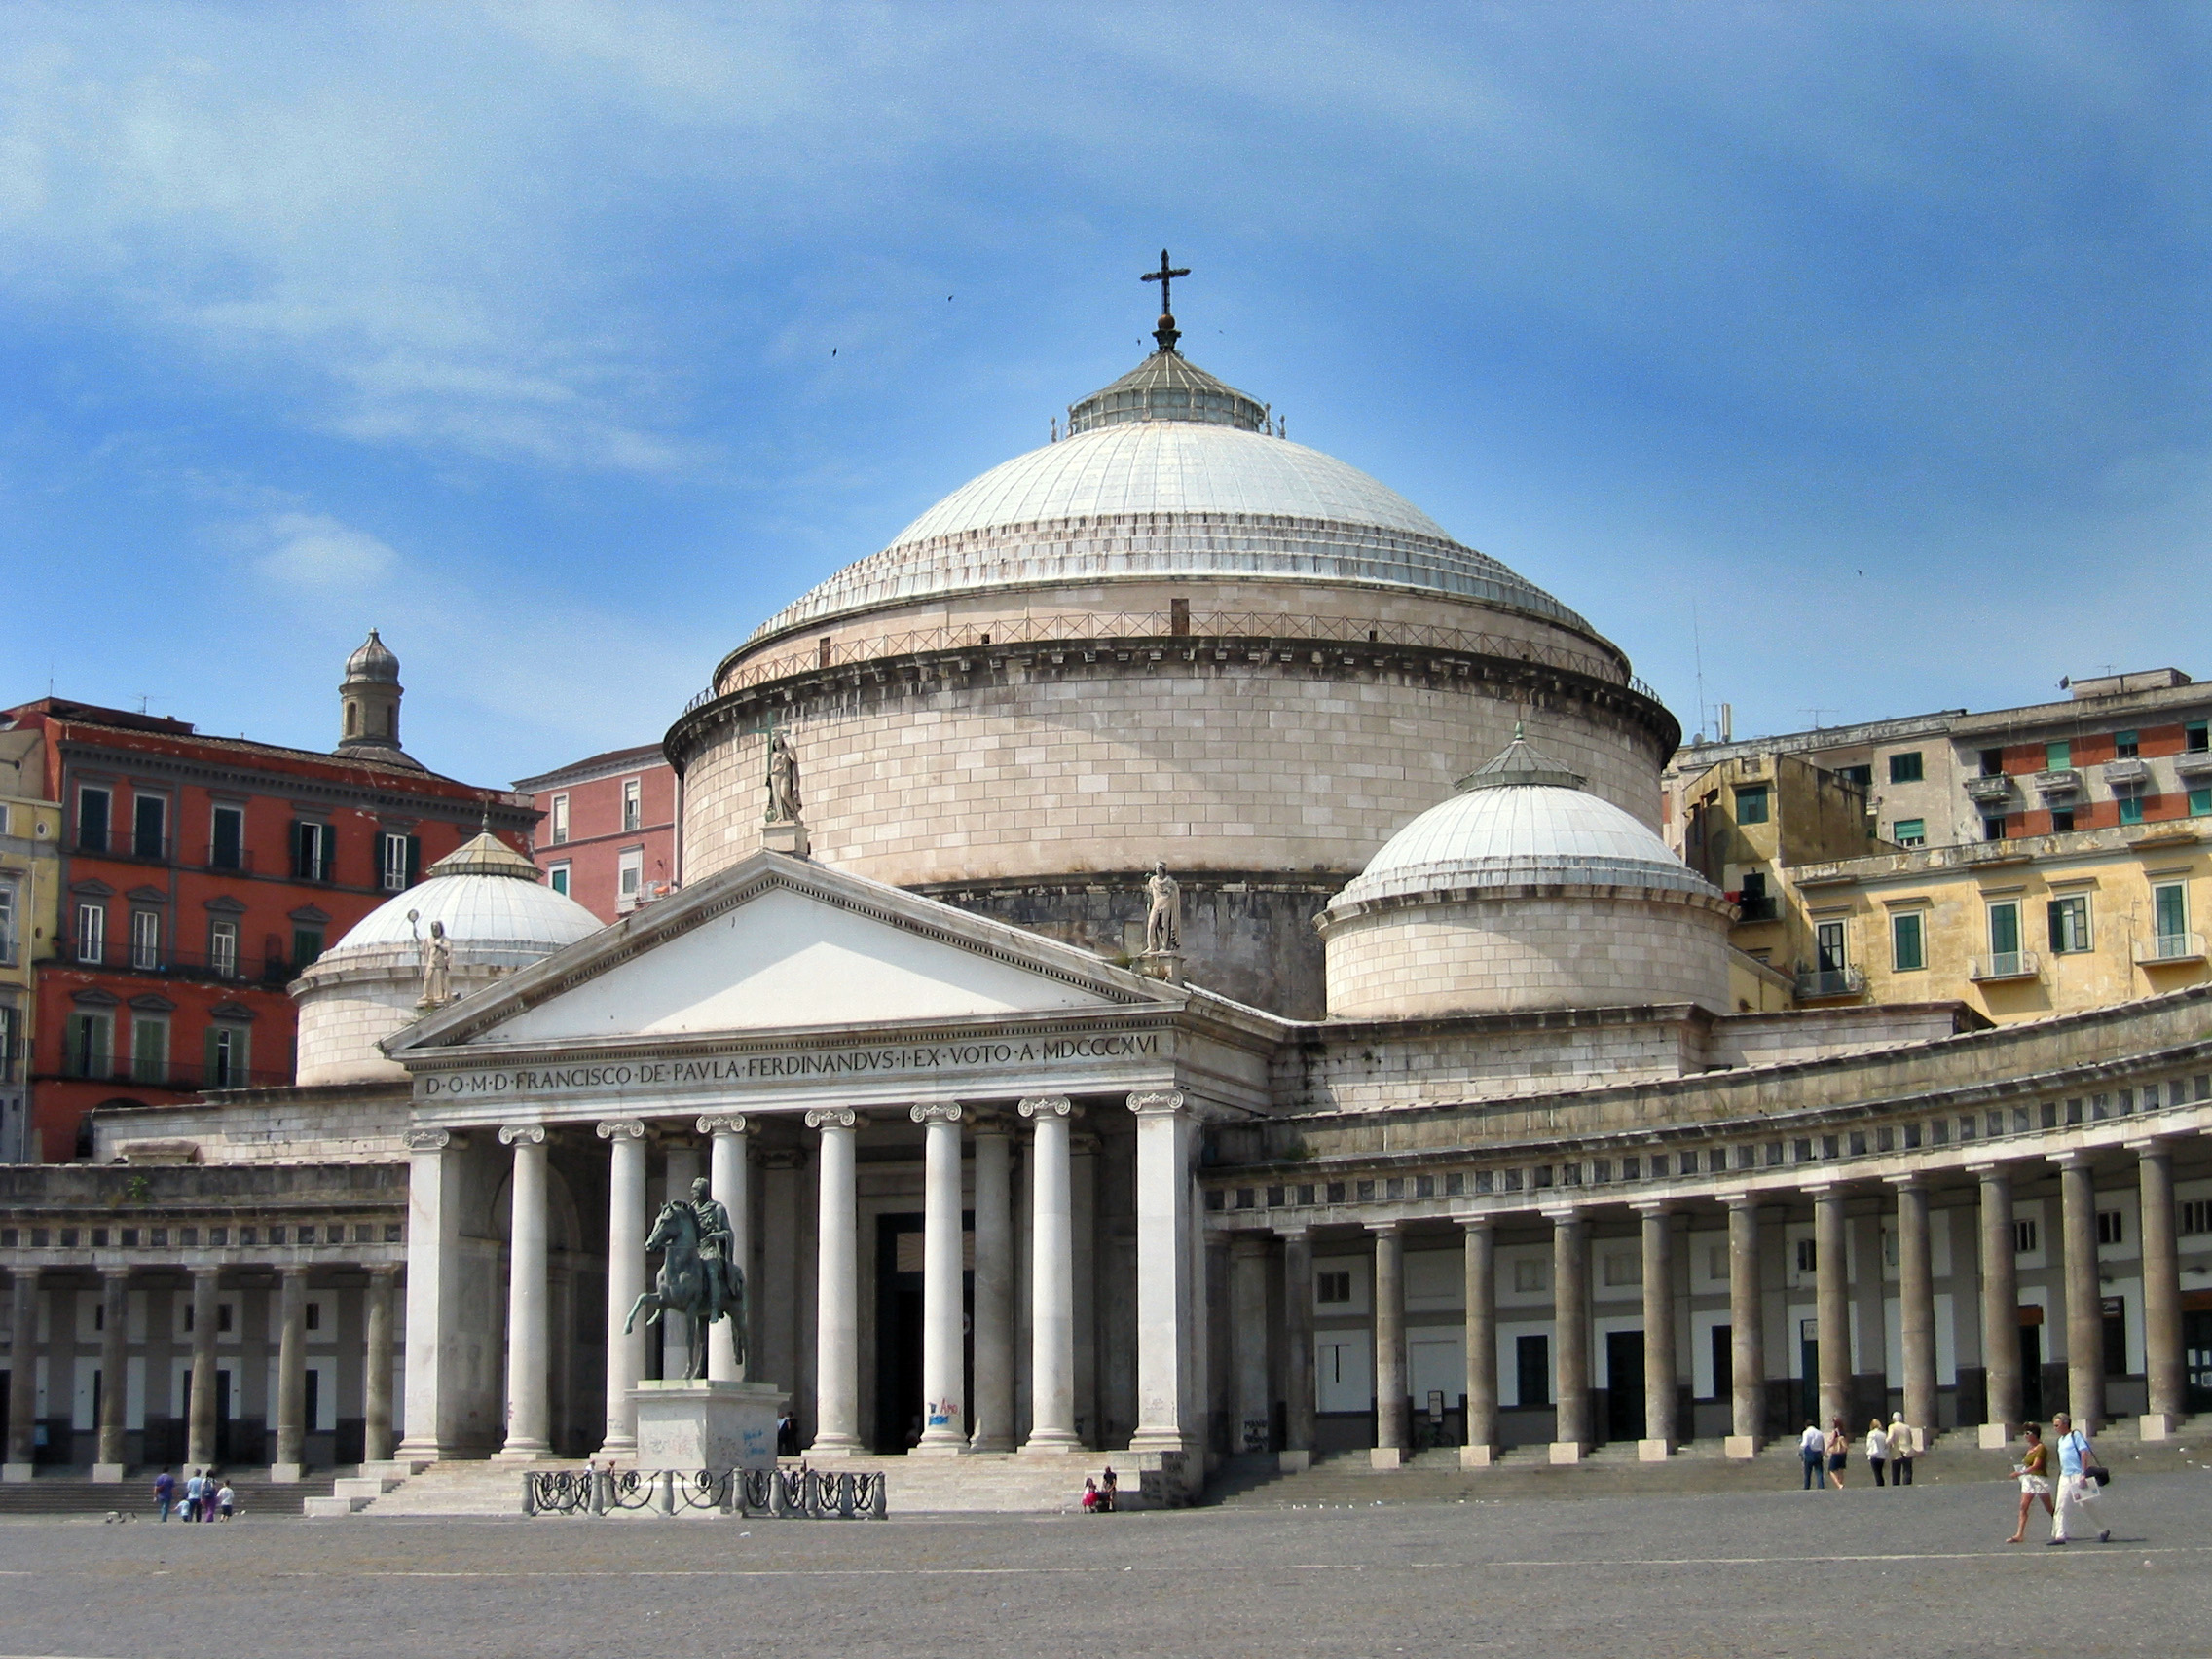 Basilica-San-Francesco-di-Paola-in-piazza-del-Plebiscito